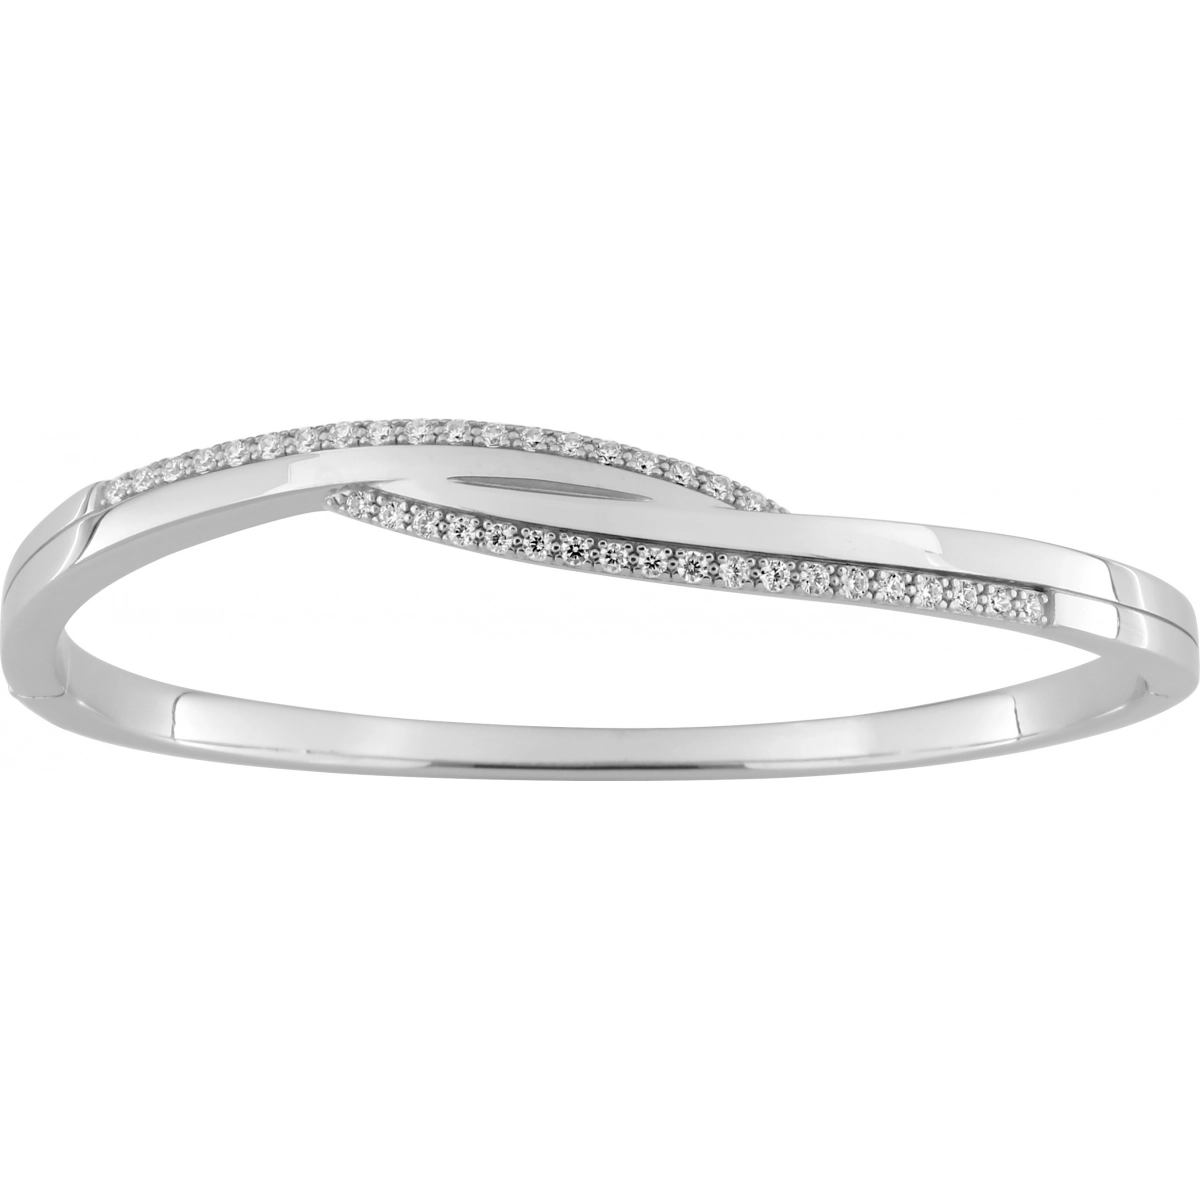 Bracelet w. cz rh925 Silver Lua Blanca  456965.9 